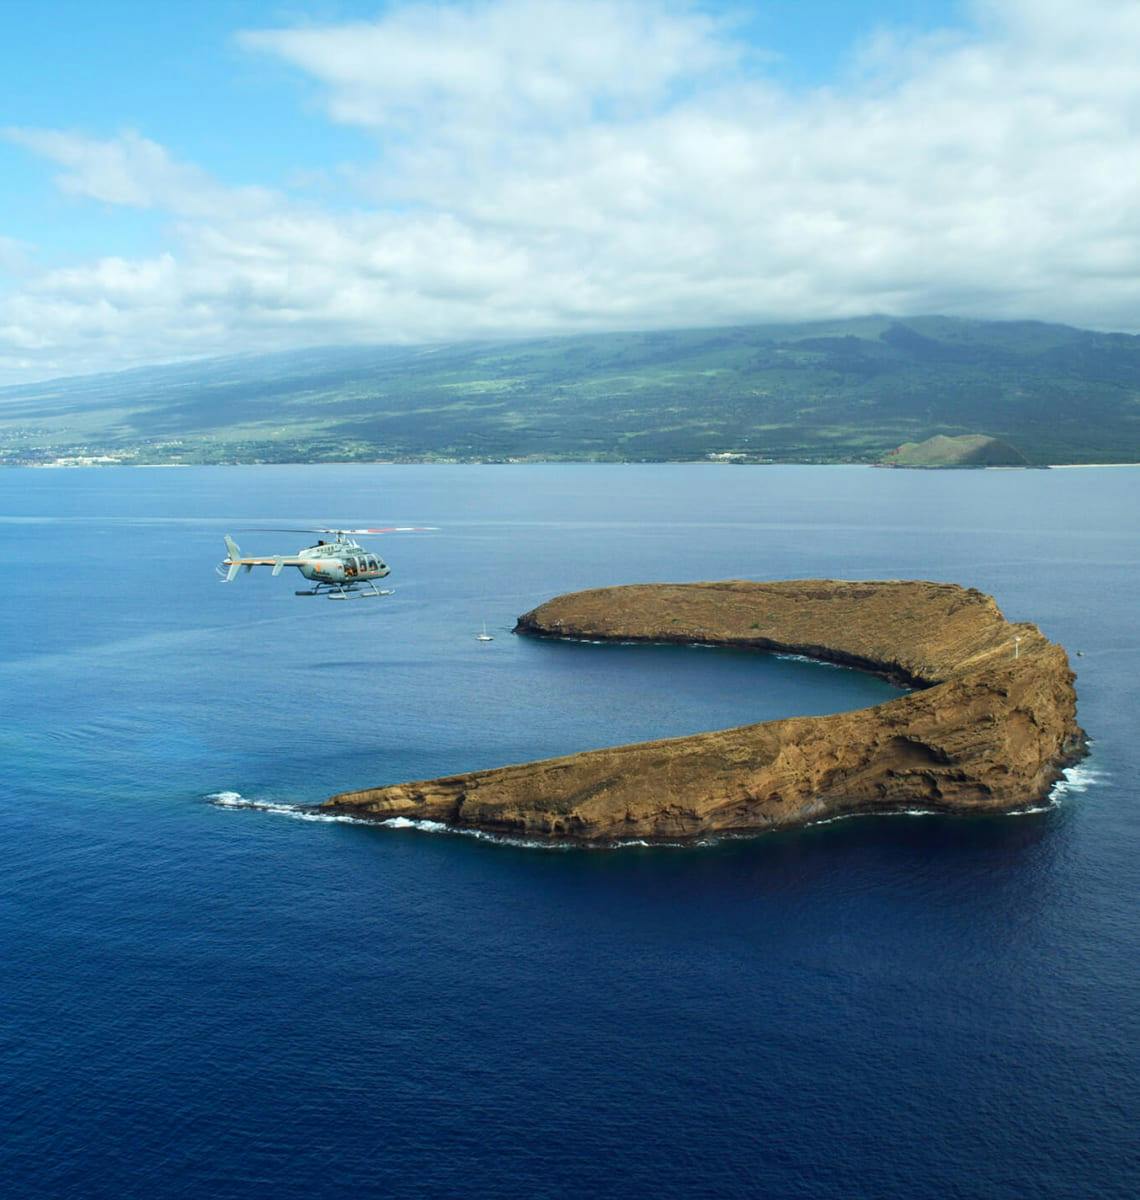 Maui ocean view 